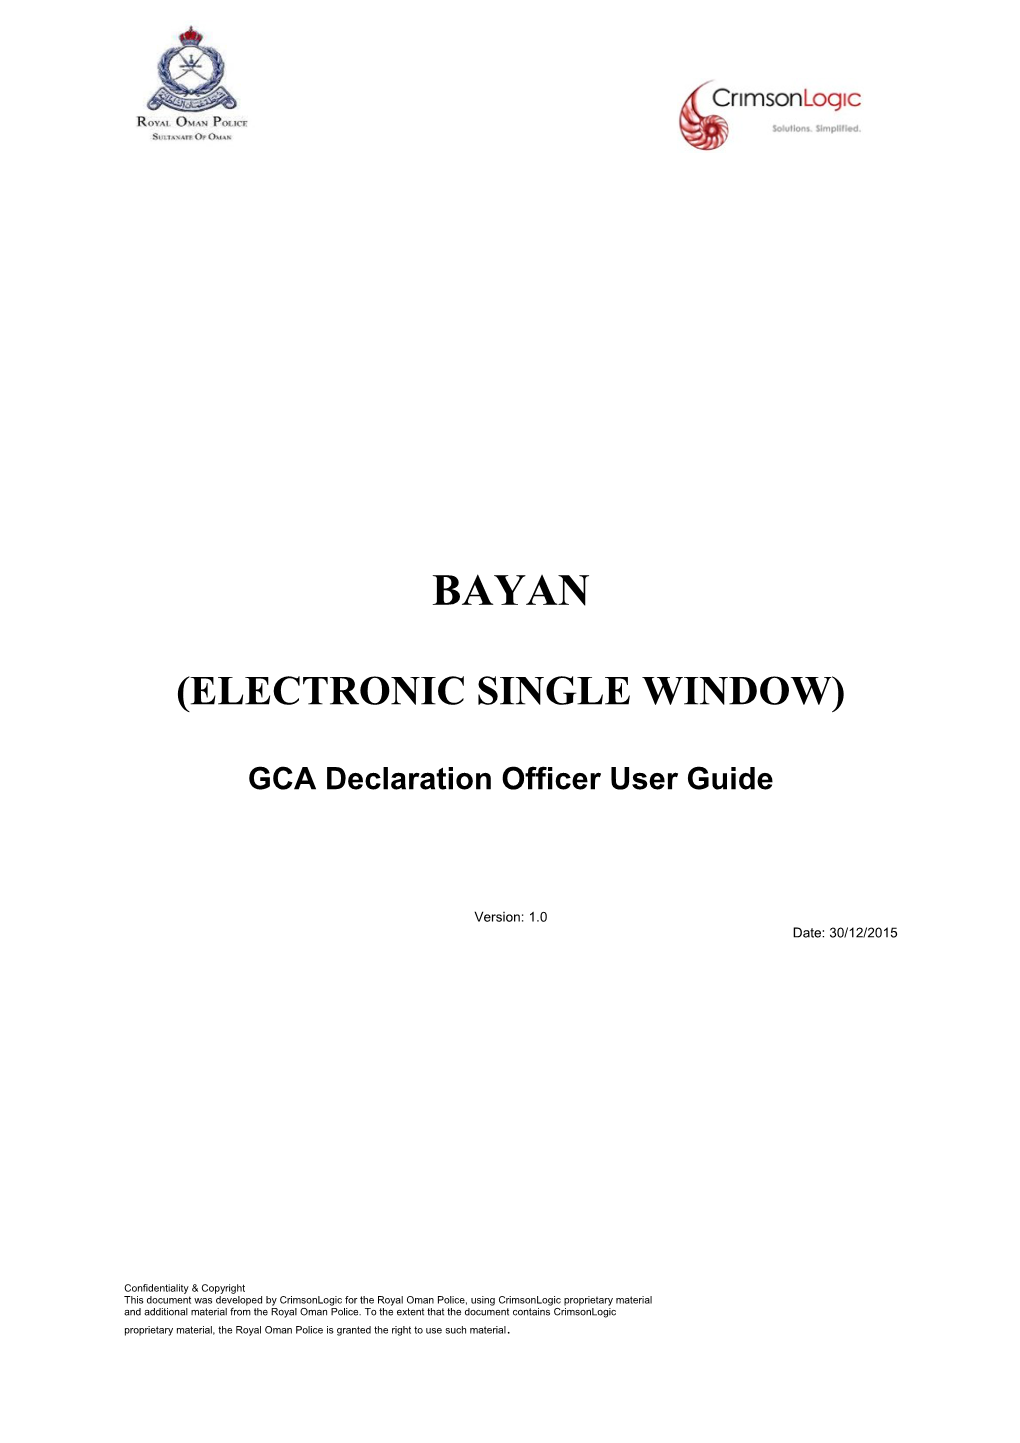 Electronic Single Window